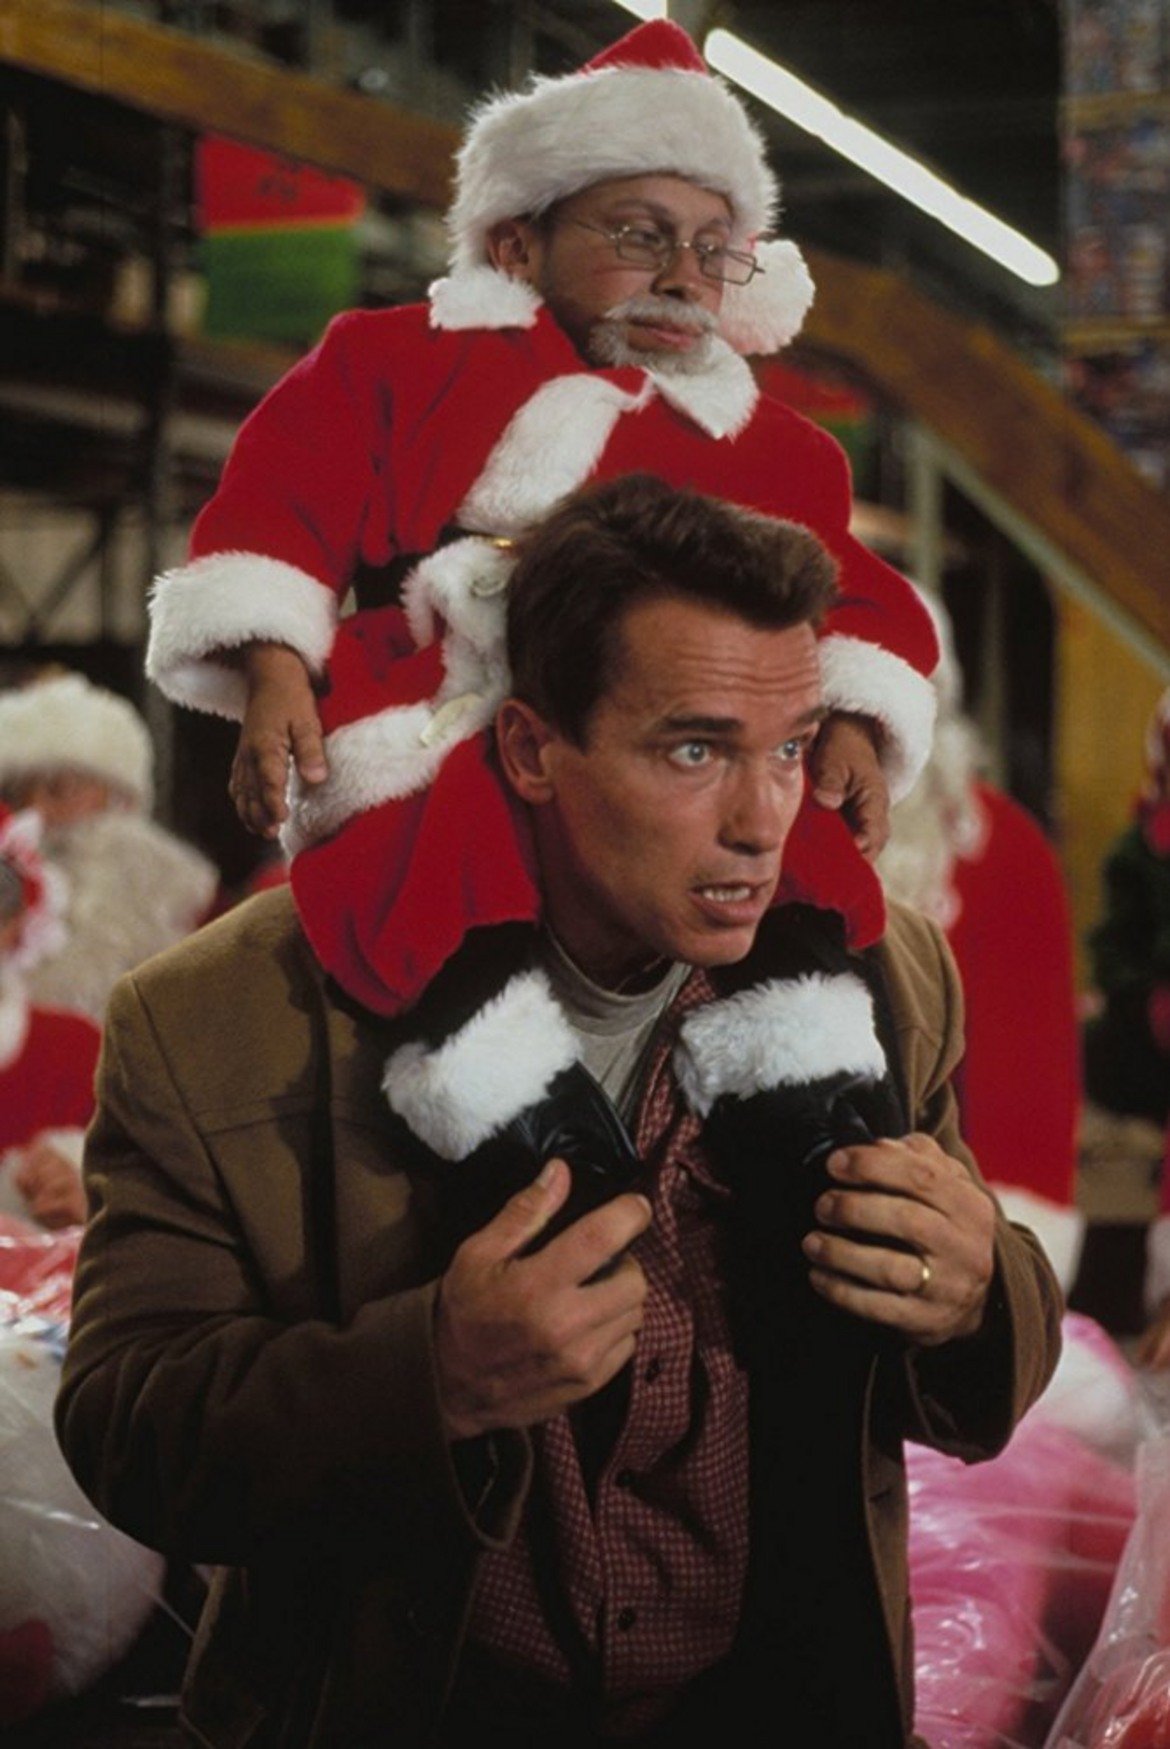  "Коледата невъзможна" 

Арнолд Шварценегер влиза в ролята на добър баща, който иска да купи перфектния подарък за детето си под формата на героя Турбо-Мен. За целта минава през безумни препятствия, които уж трябва да са смешни. 

Тълпите пазаруващи по пътя му са по-настървени и от тези на Черния петък и пазаруването се превръща в мисия почти невъзможна. Приключенията на Шварценегер обаче не са особено забавни, а в наше време изглеждат и направи невъзможни. Въпреки това и за ужас на всички "Коледата невъзможна" също се върти всяка Коледа.